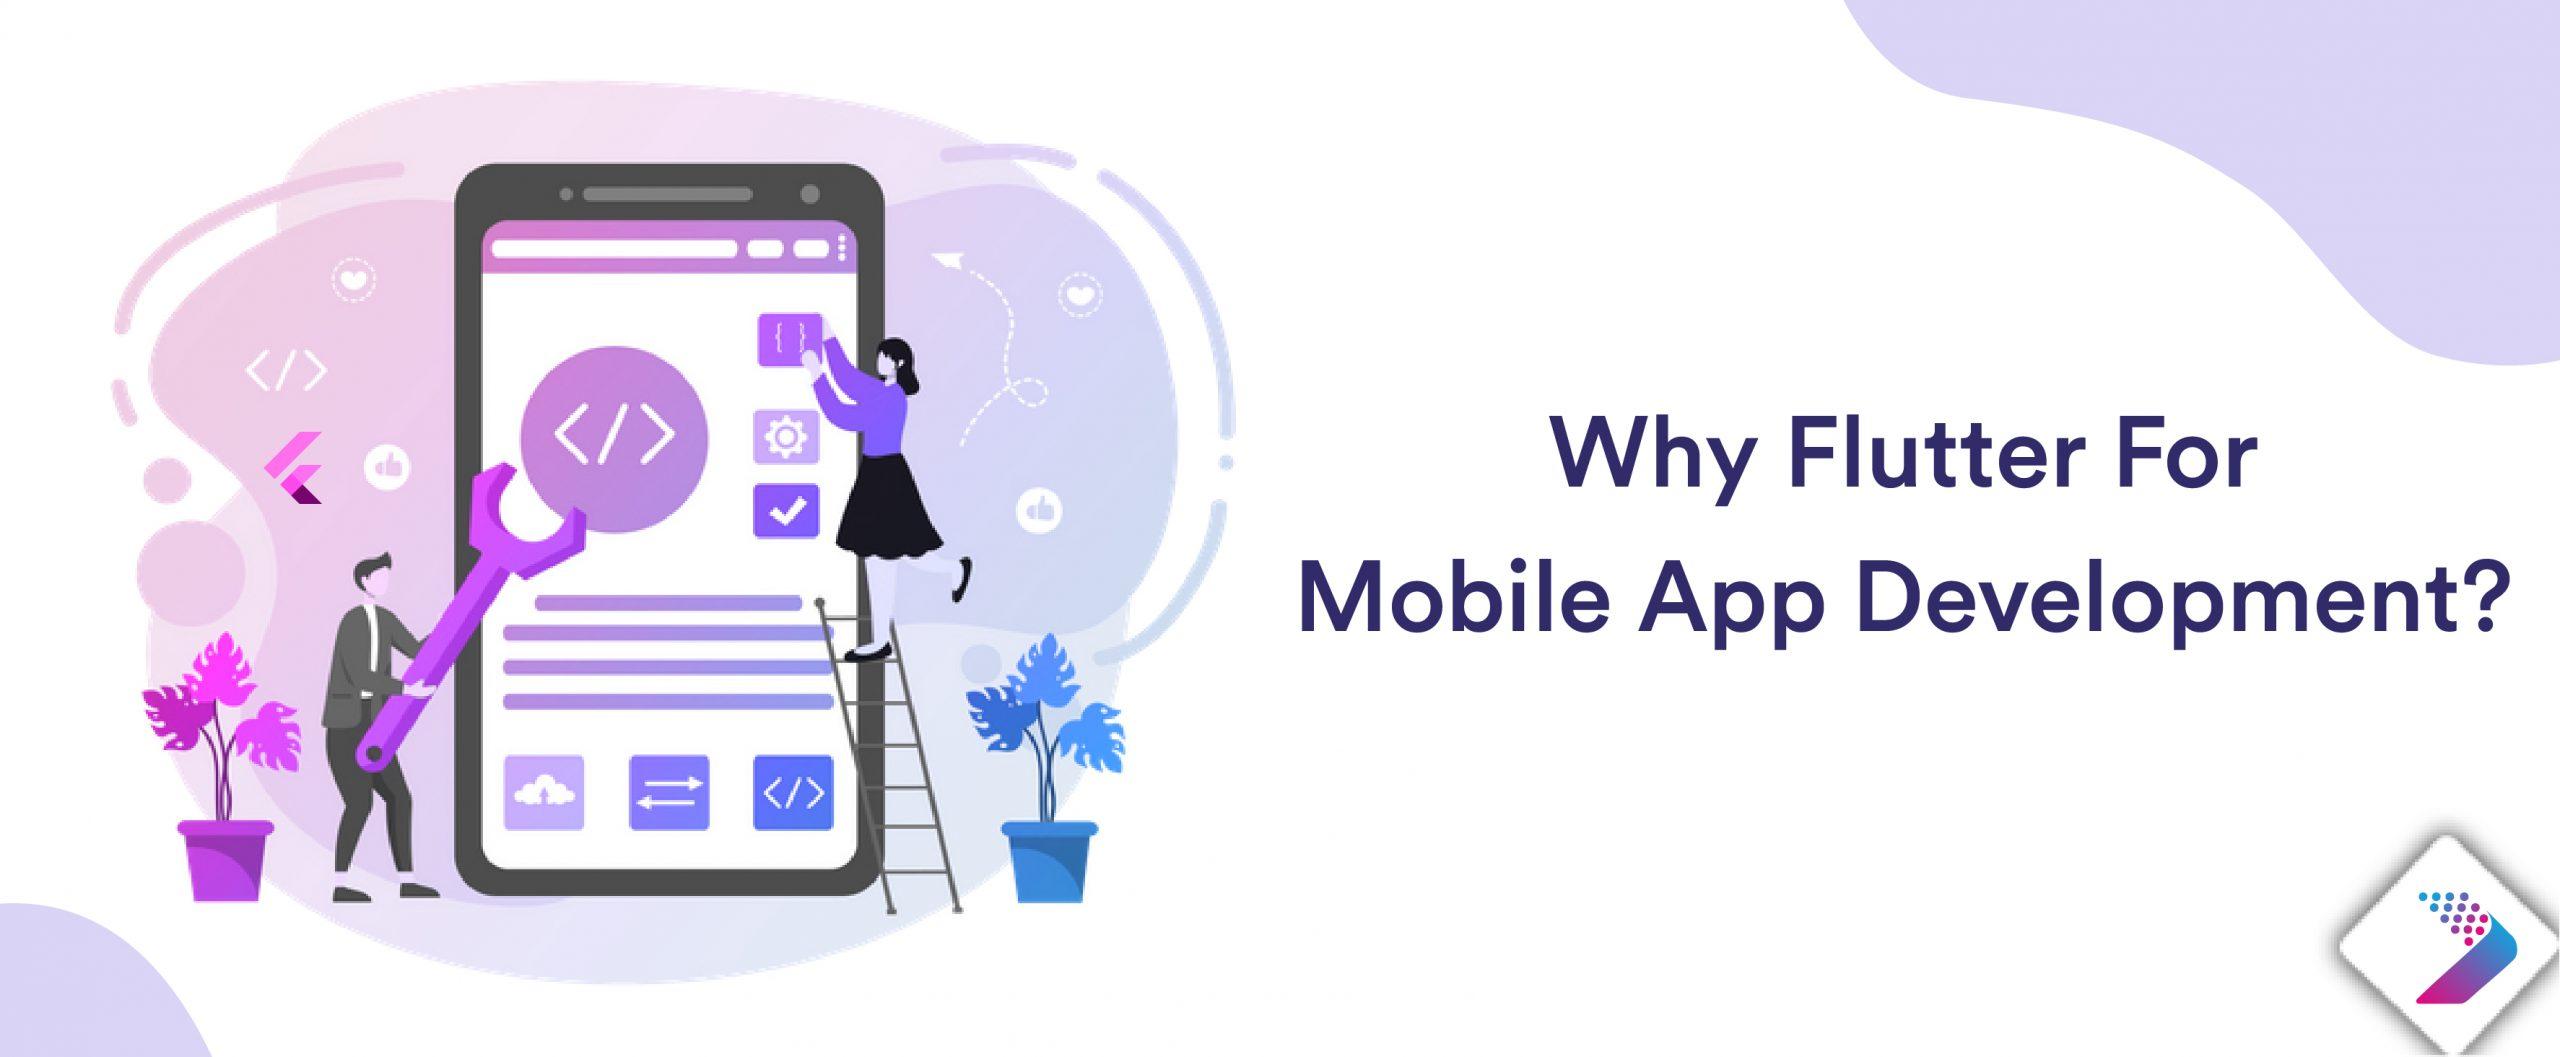 Why flutter for mobile app development